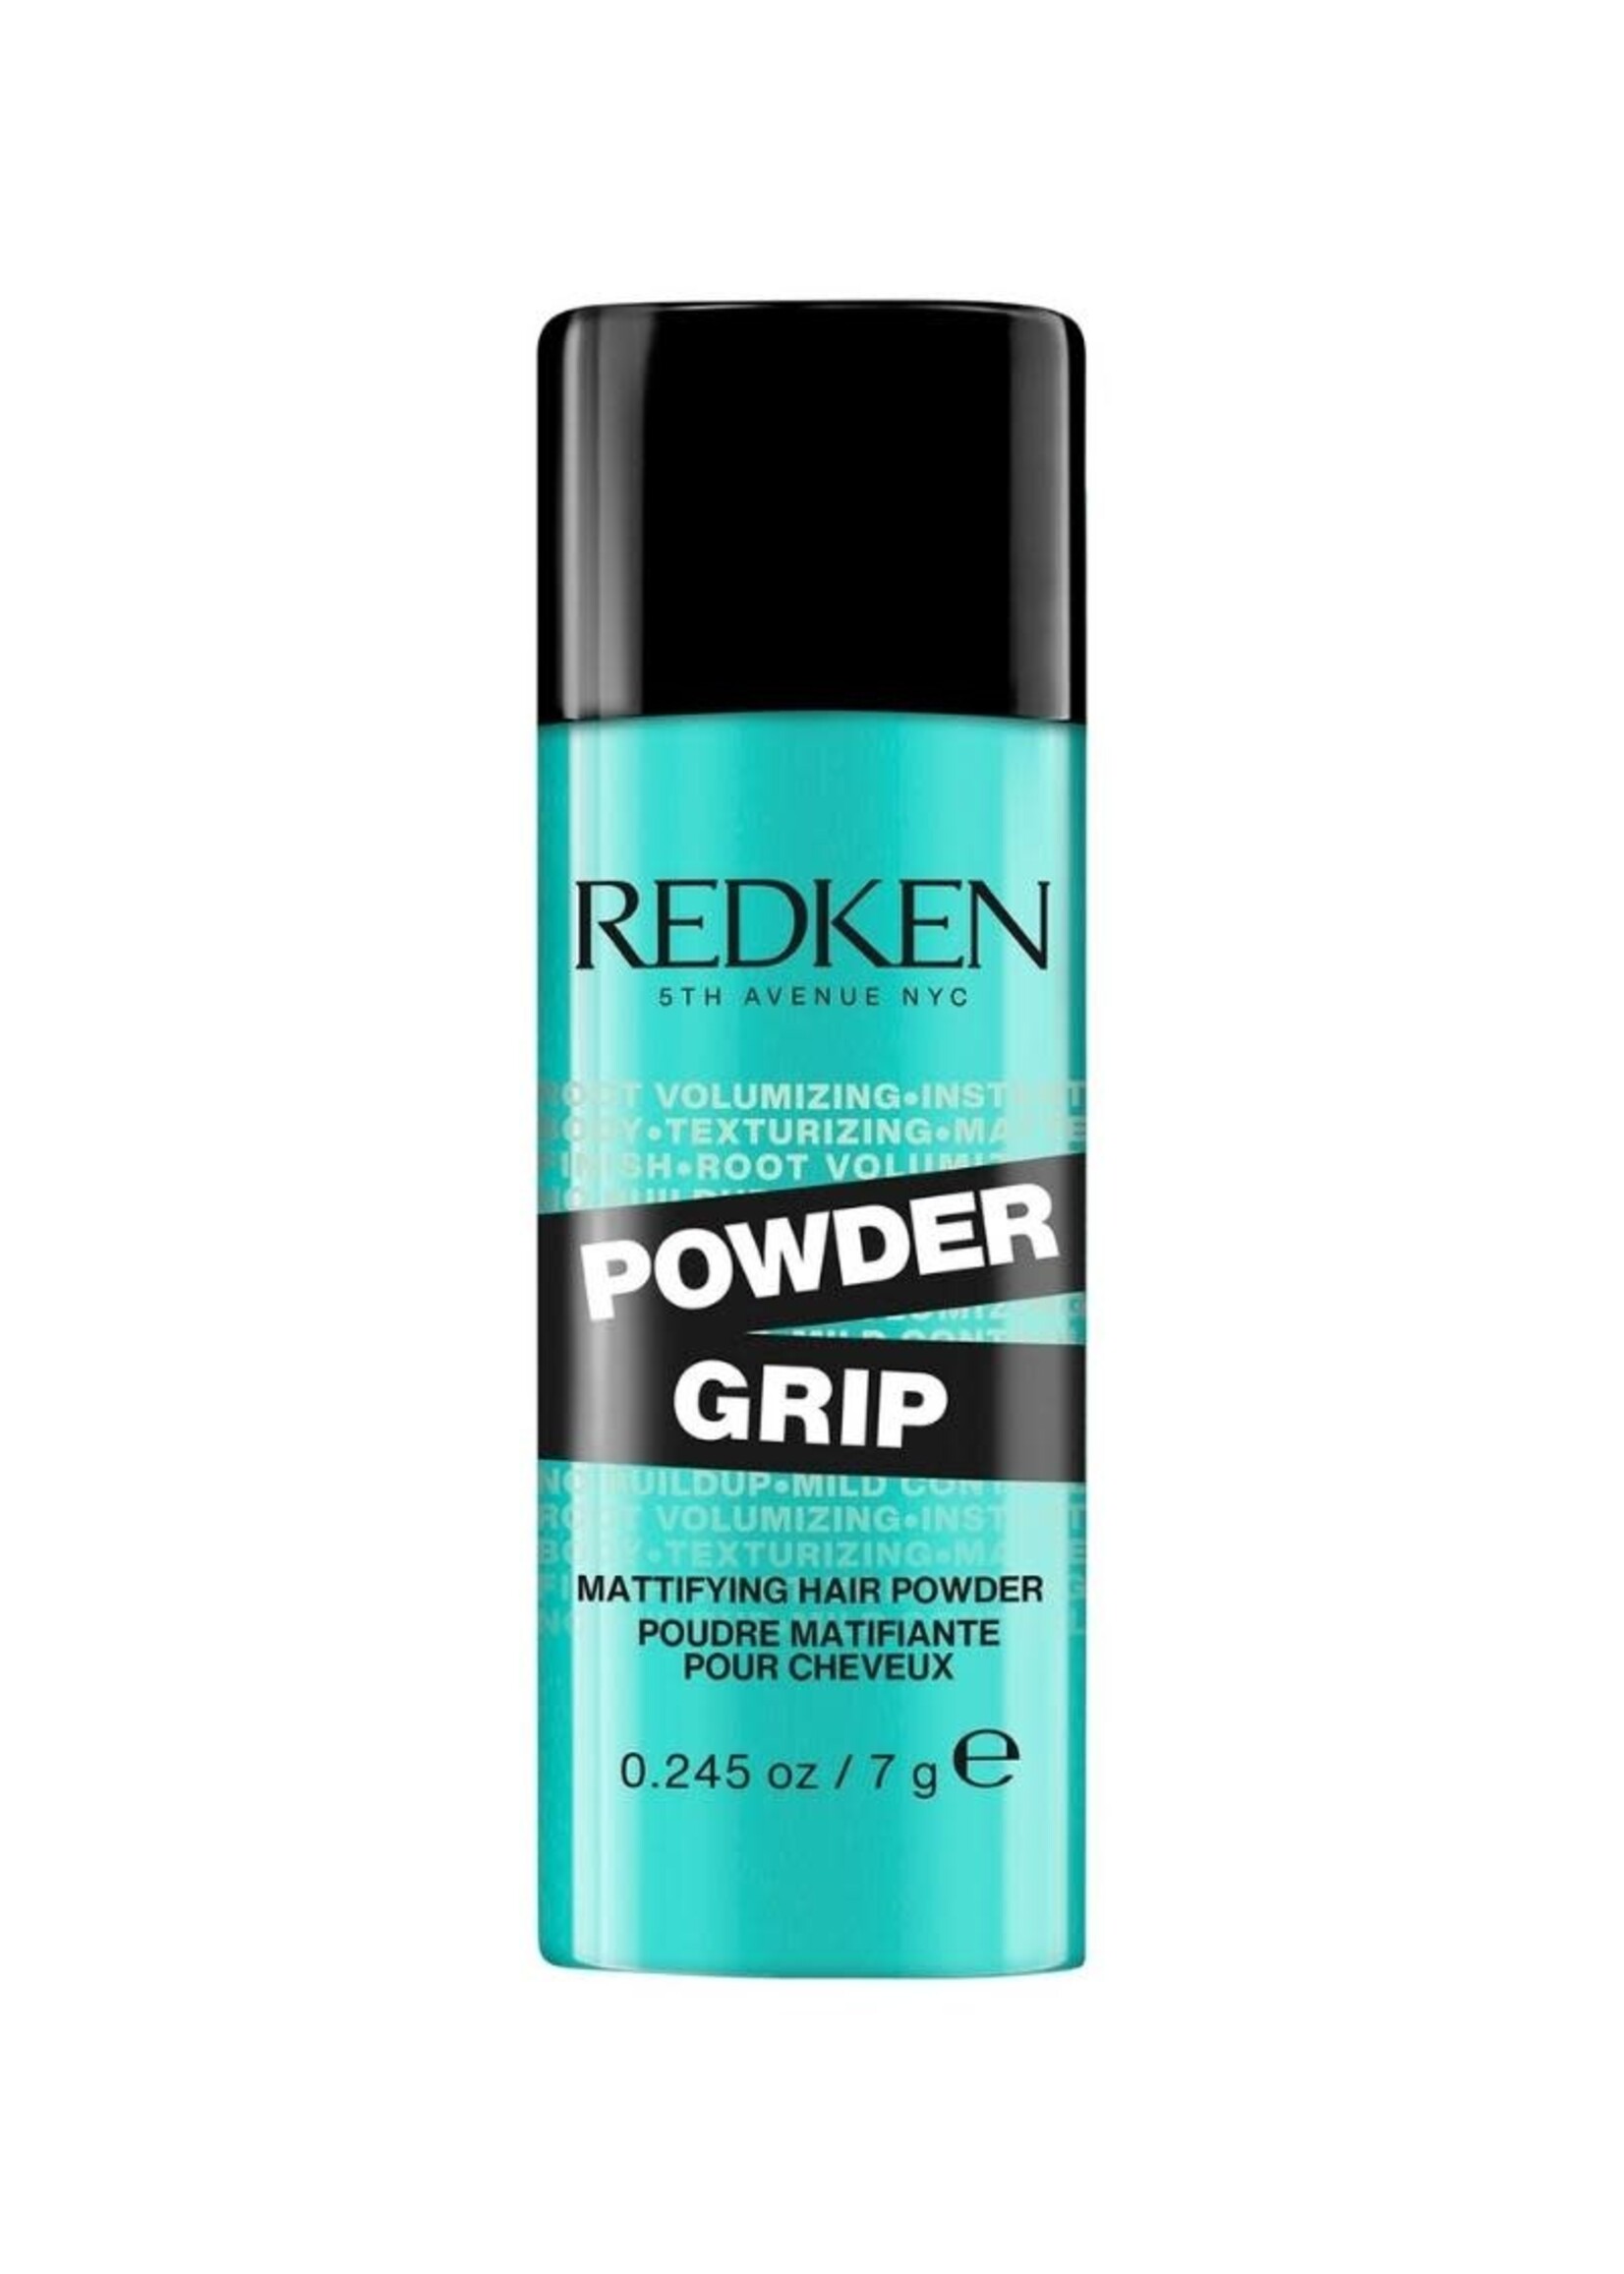 Redken Redken Powder Grip 03 Mattifying Hair Powder 7g